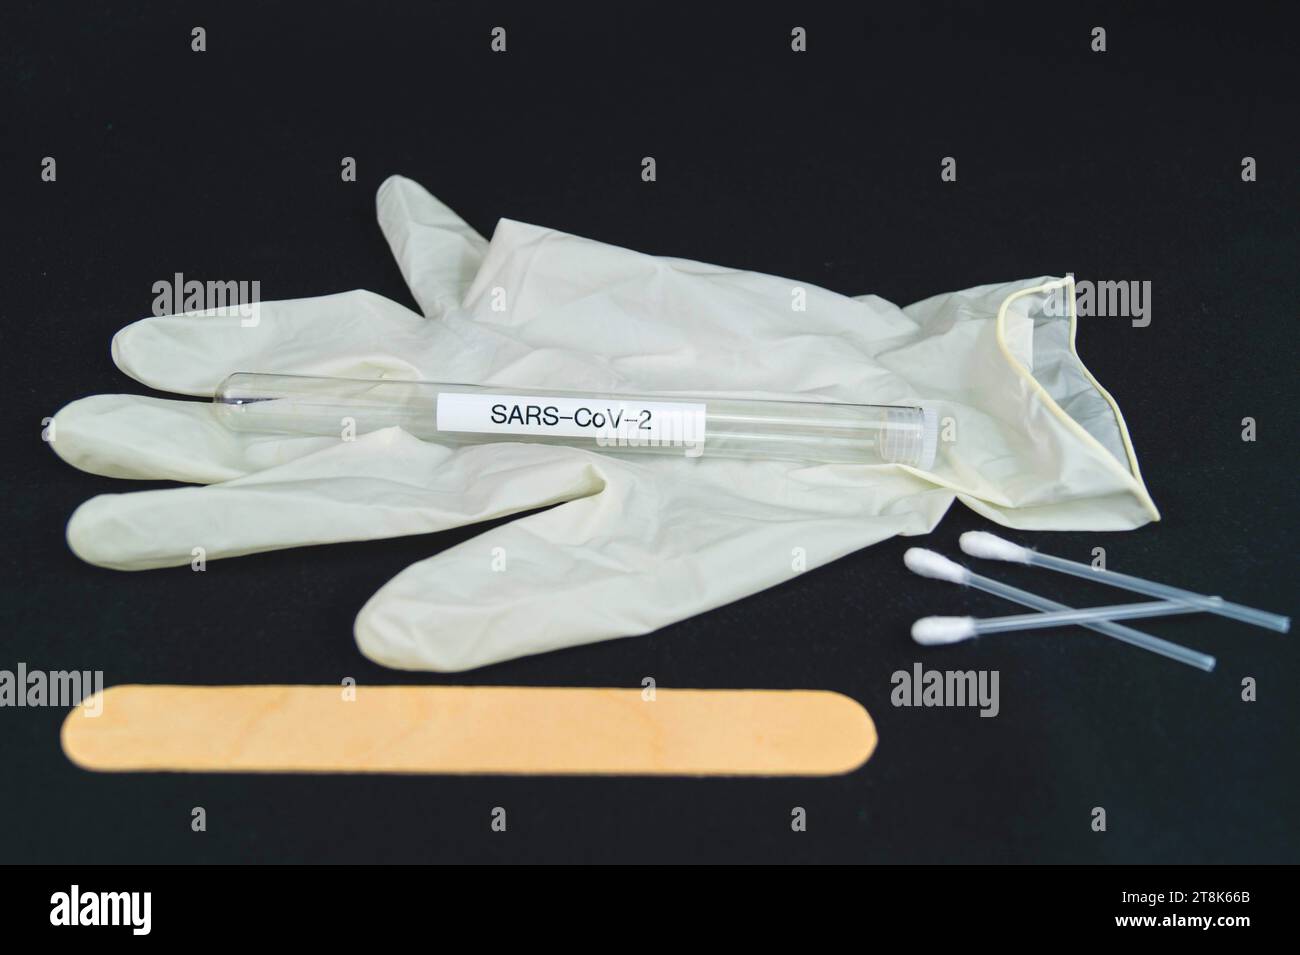 Corona test tubule, latex glove, cotton swab and spatula Stock Photo